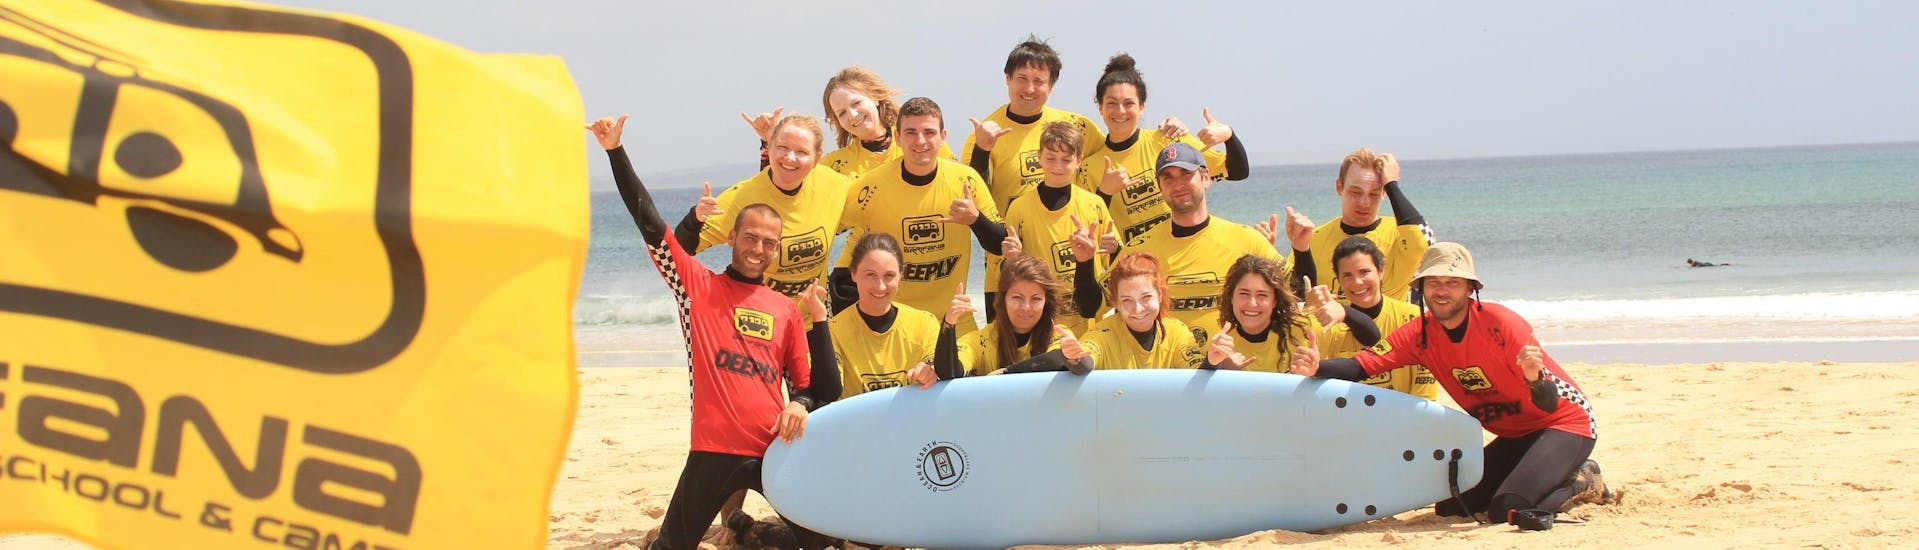 Surf Coaching privé à Arrifana (dès 15 ans) pour Surfeurs confirmés.